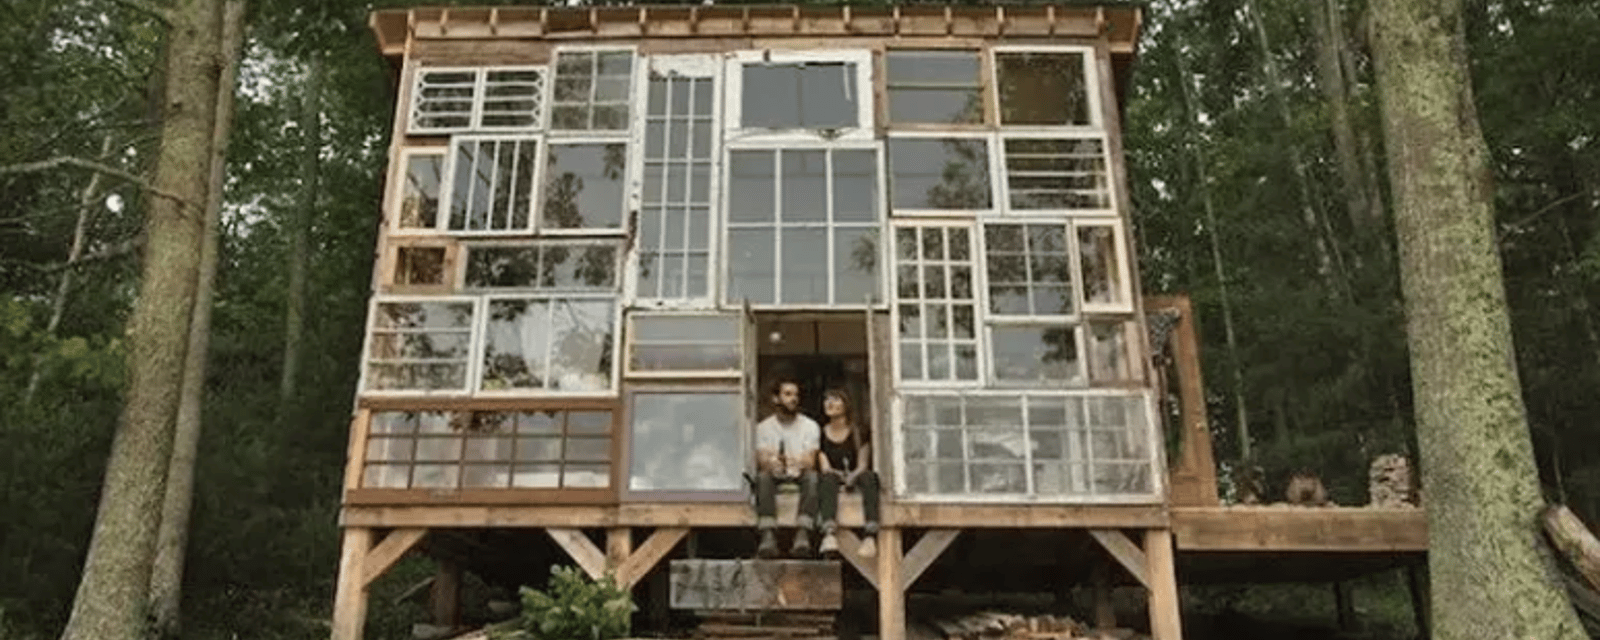 Ils recyclent de vieilles fenêtres pour construire une magnifique cabane en forêt